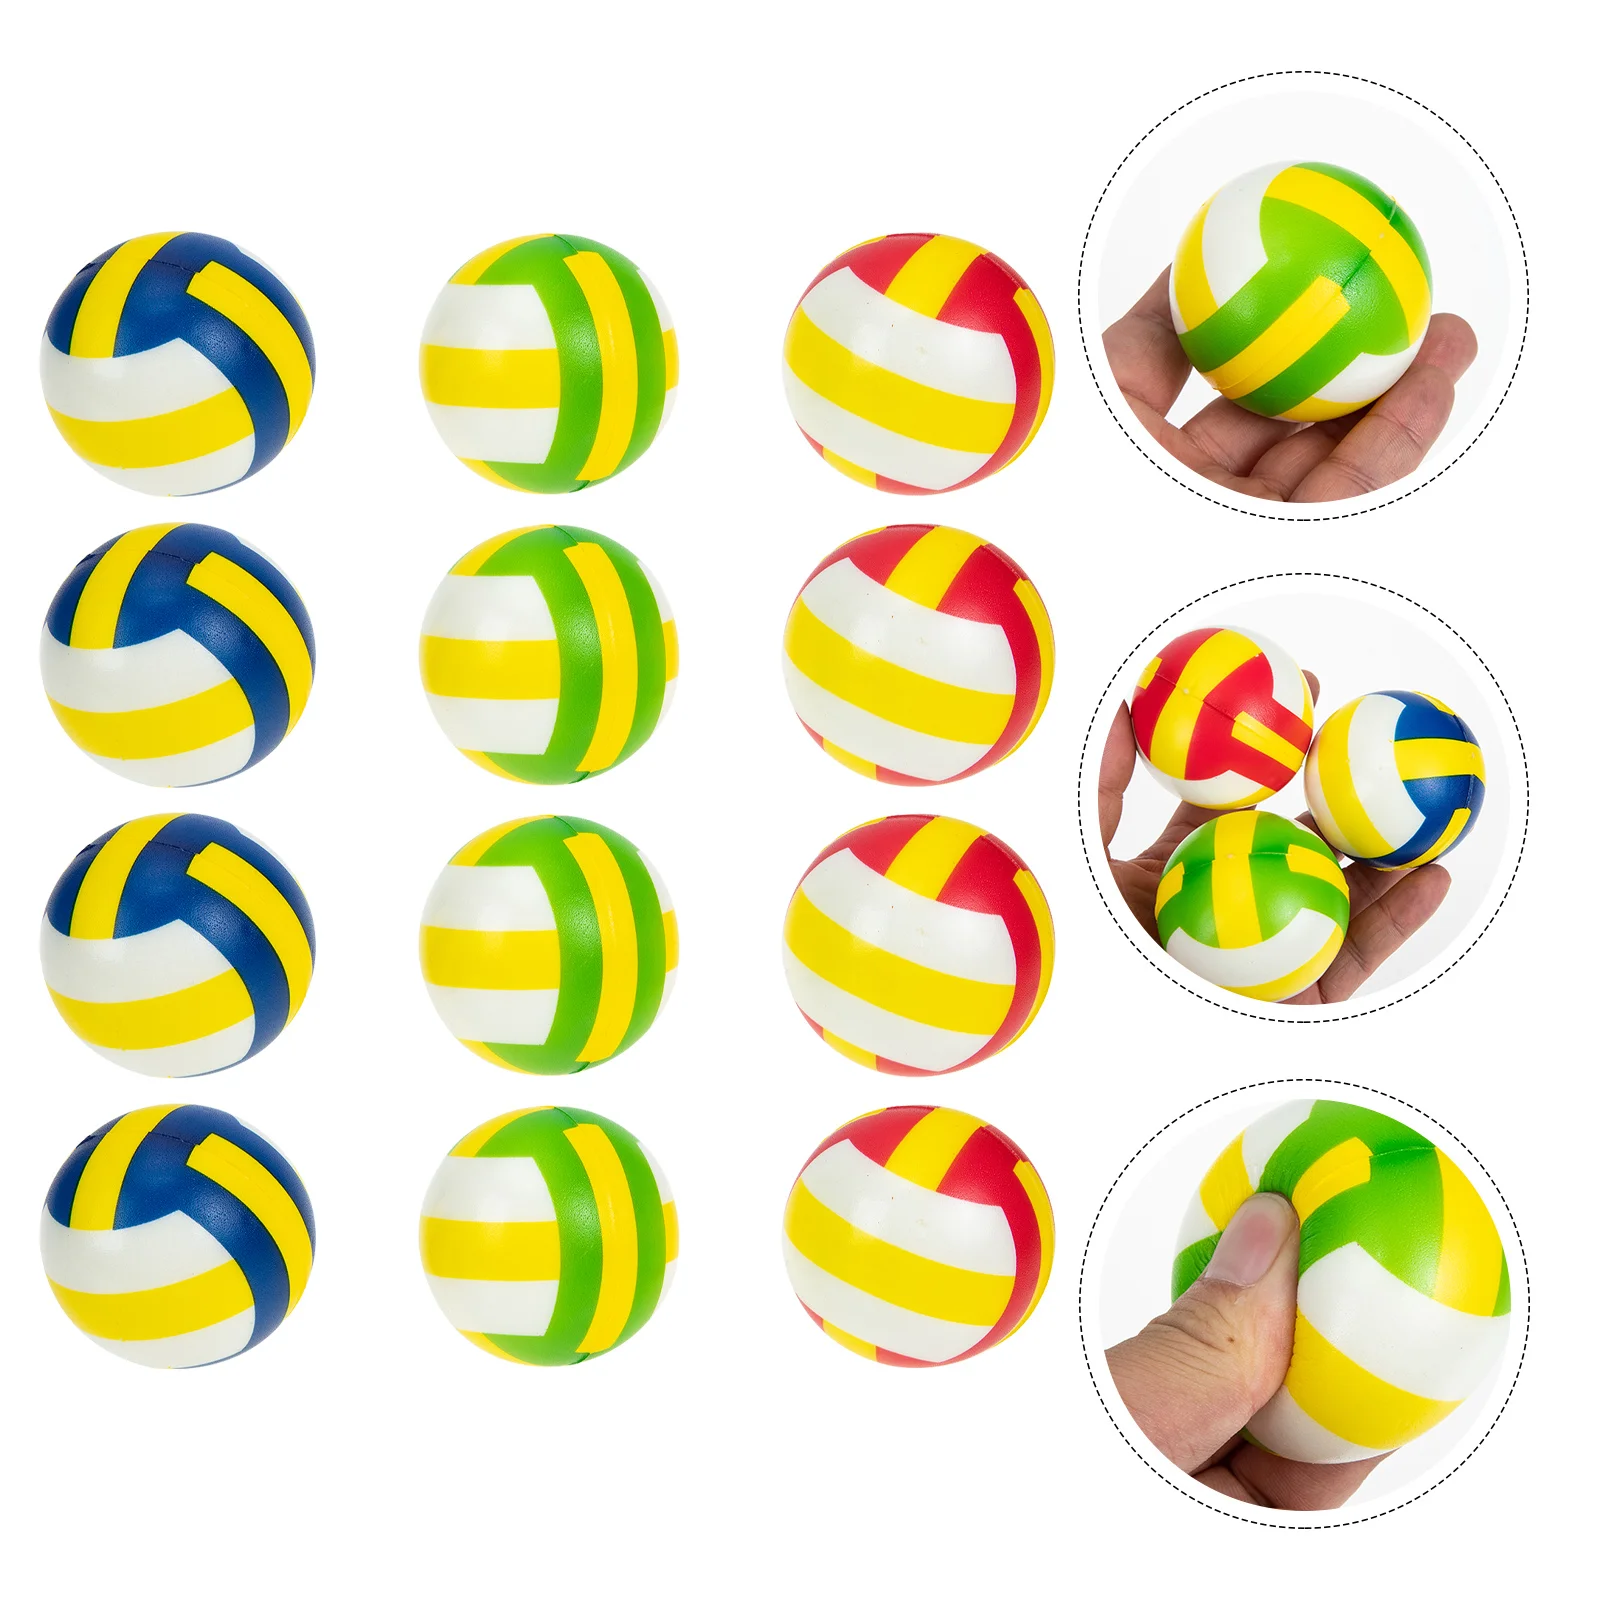 12 Шт Вентиляционный мяч Волейбольный Стресс-ребенок Детские Мини-игрушки Sensory Fidget Pu Портативная Декомпрессия